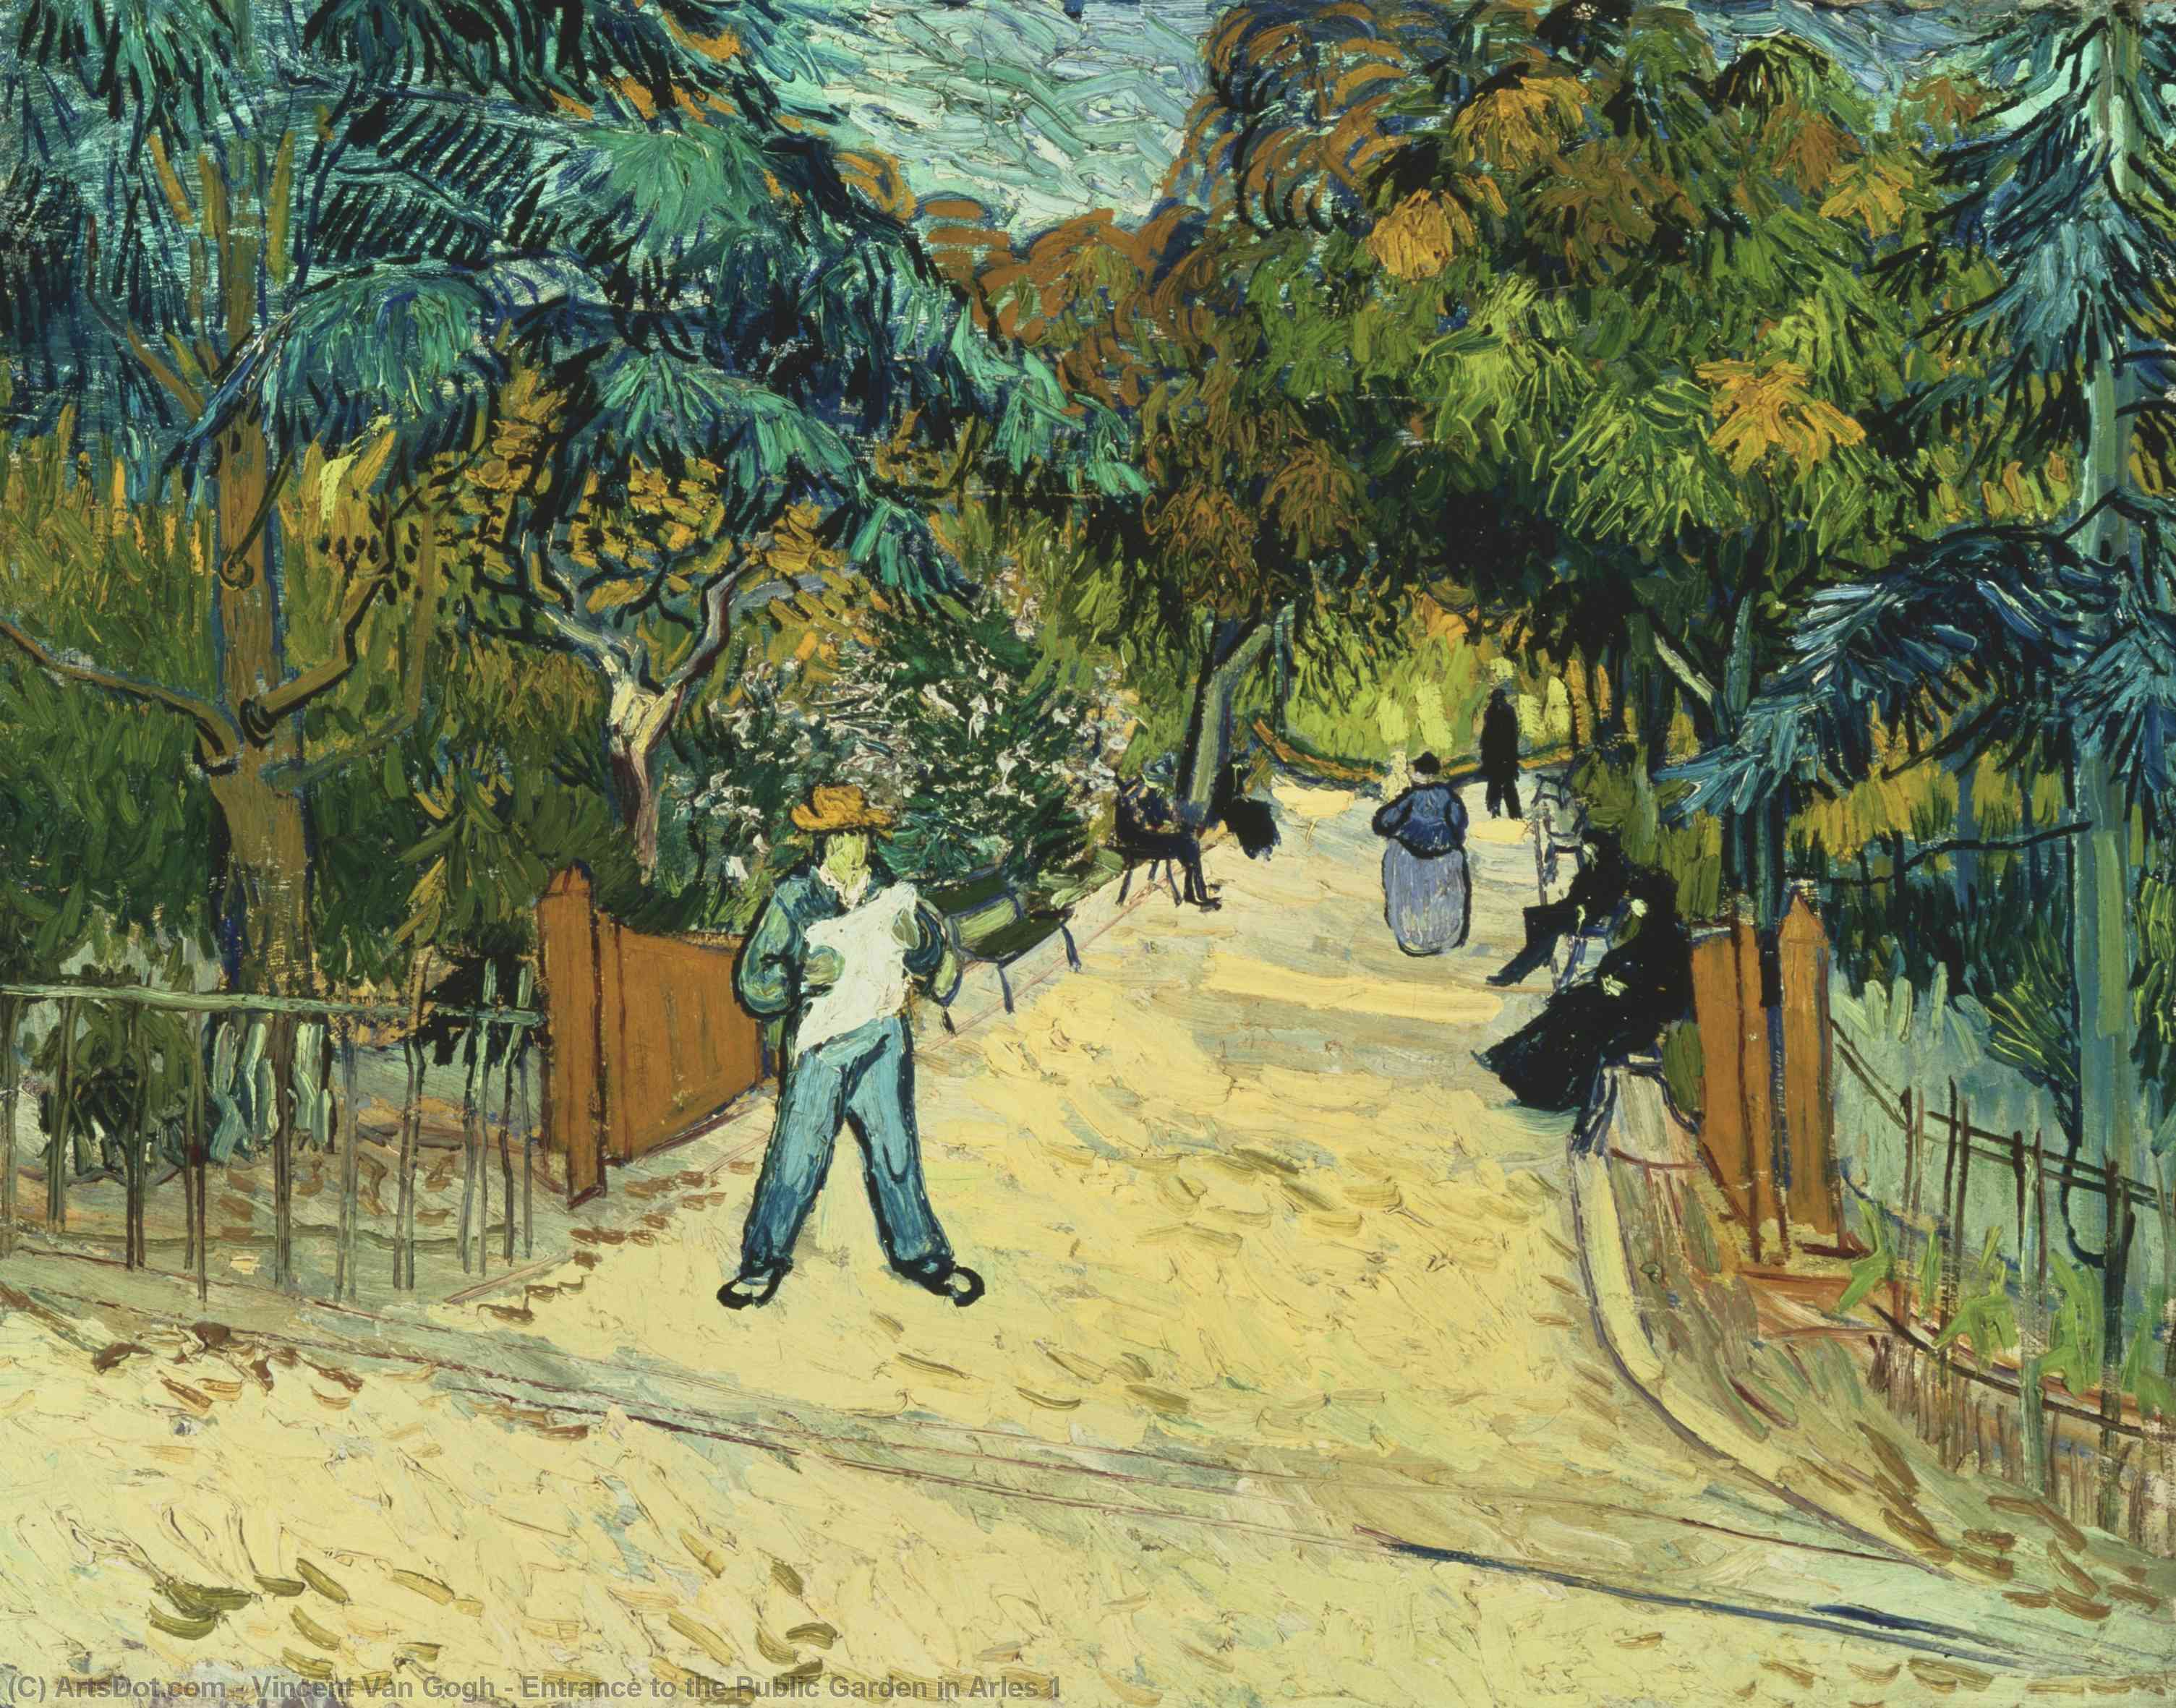 Wikioo.org – L'Encyclopédie des Beaux Arts - Peinture, Oeuvre de Vincent Van Gogh - Entrée de jardin public à arles 1